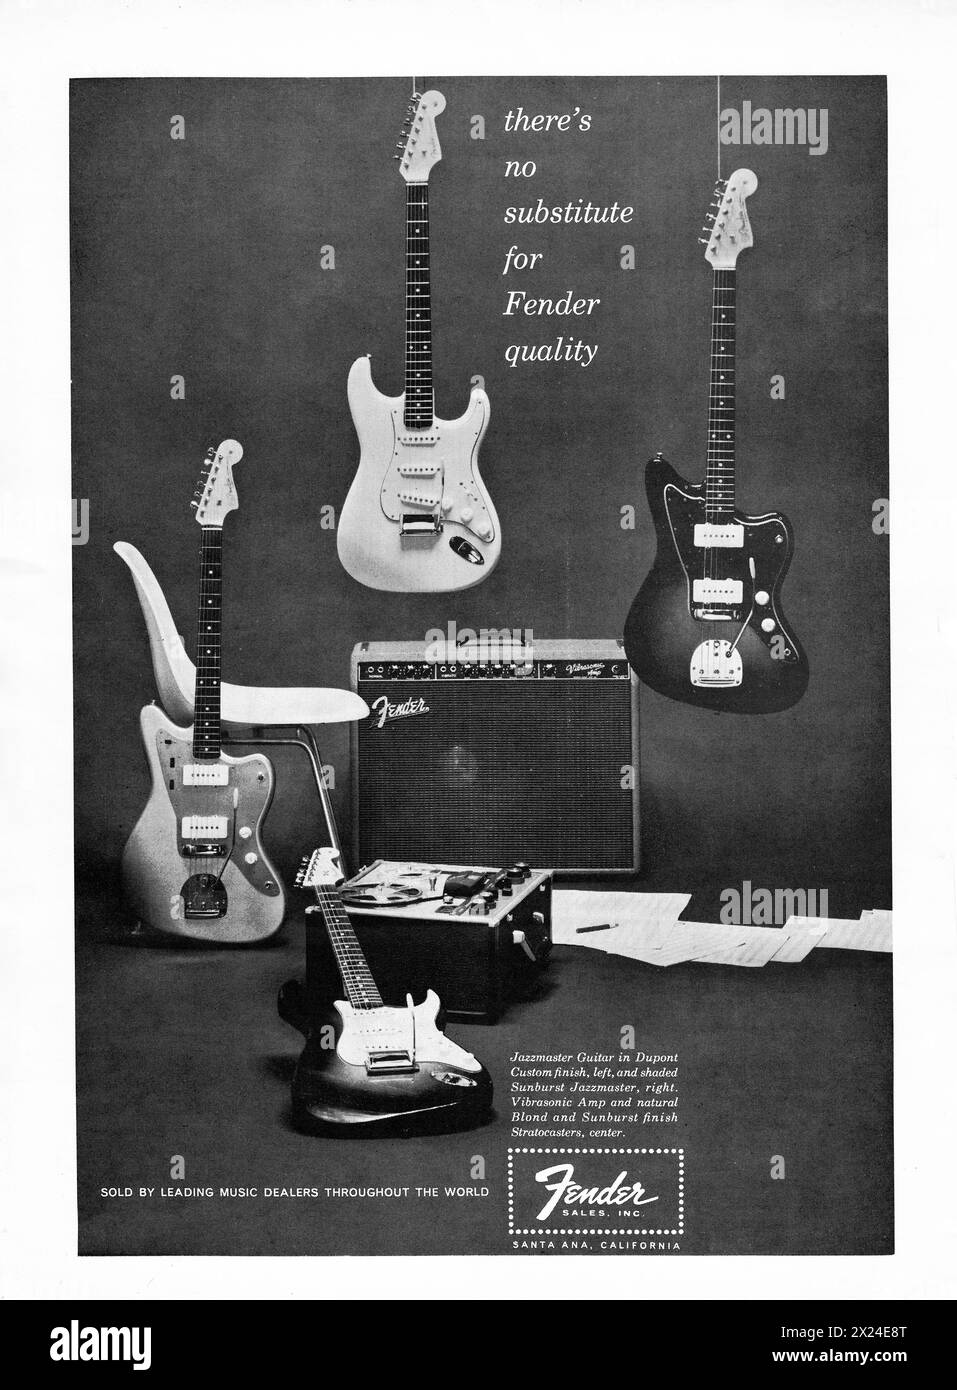 Eine Fender-Werbung, die die Verwendung von Fender-Gitarren und Fender-Verstärkern fördert. Für ein Musikmagazin 1960. Stockfoto